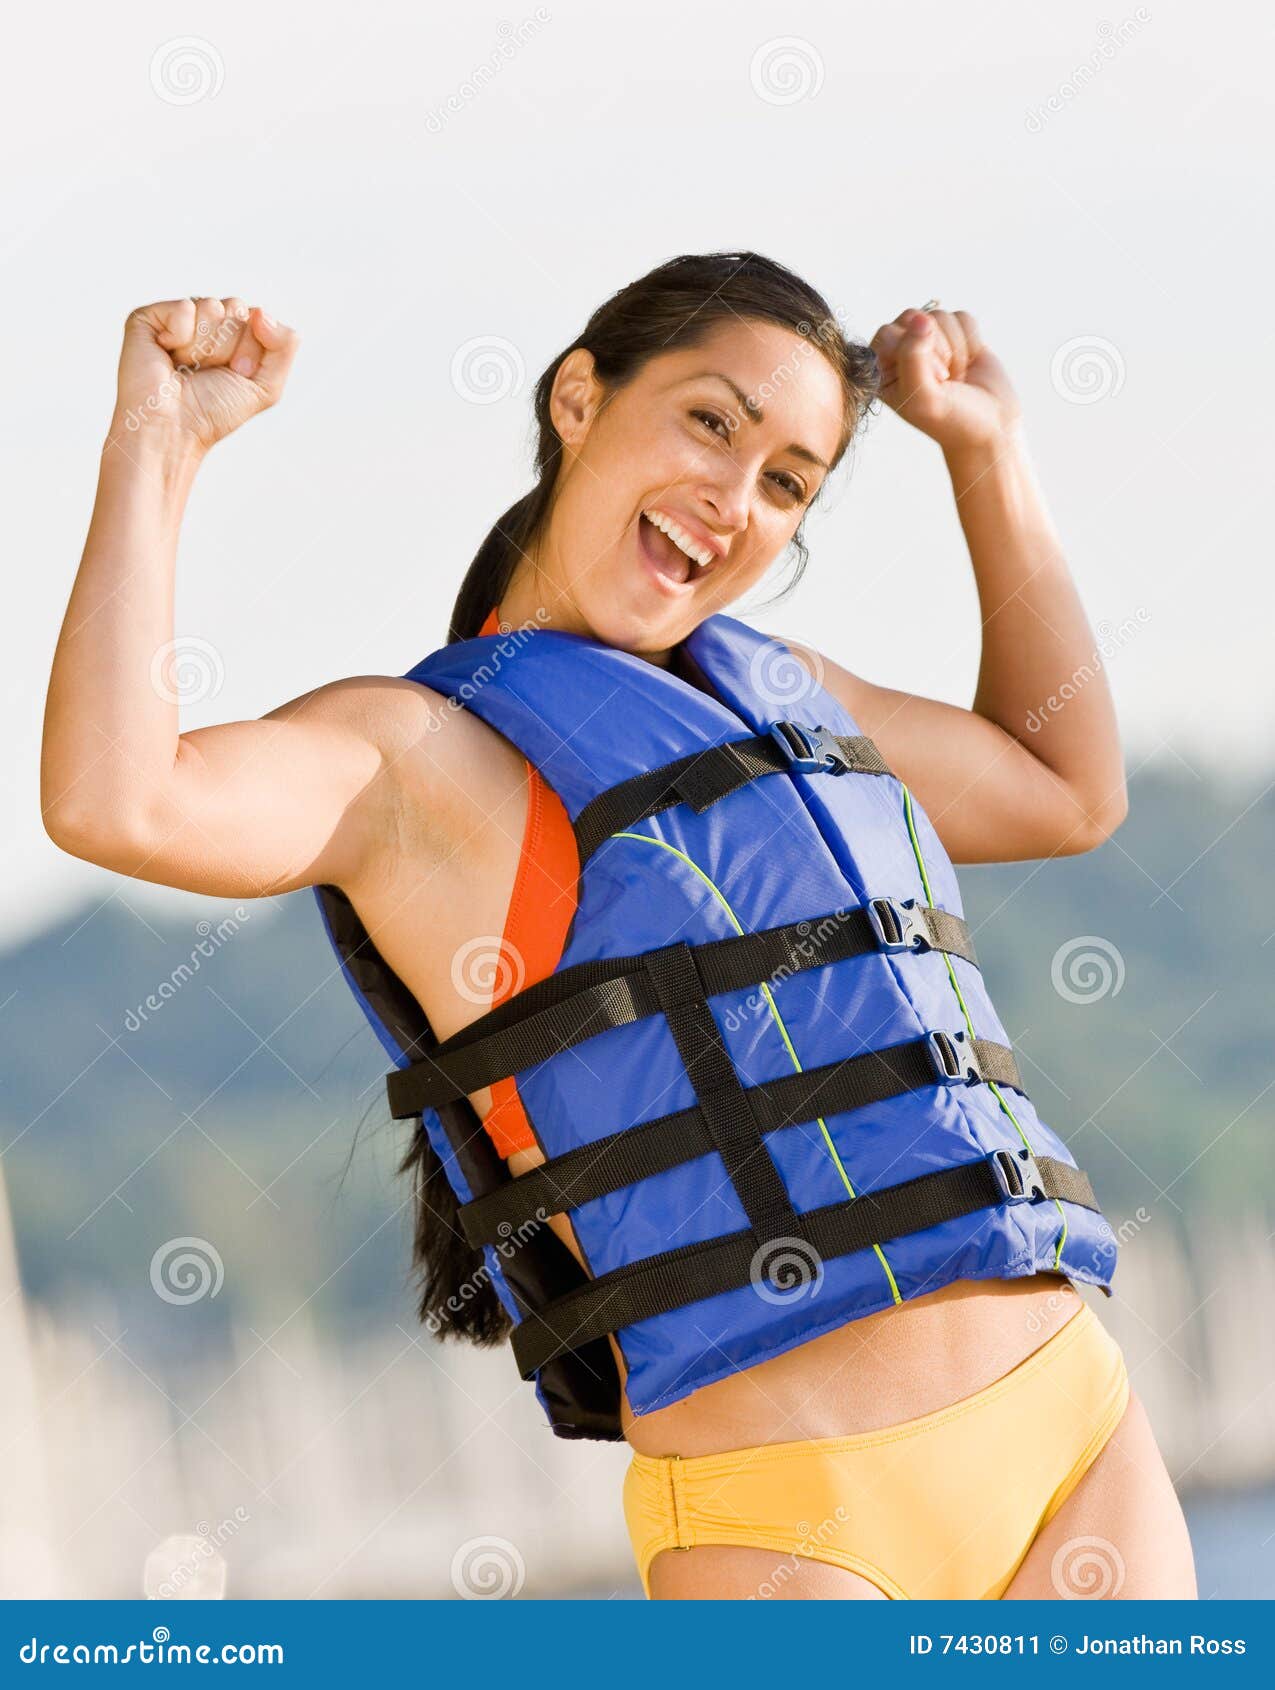 woman wearing life jacket at beach